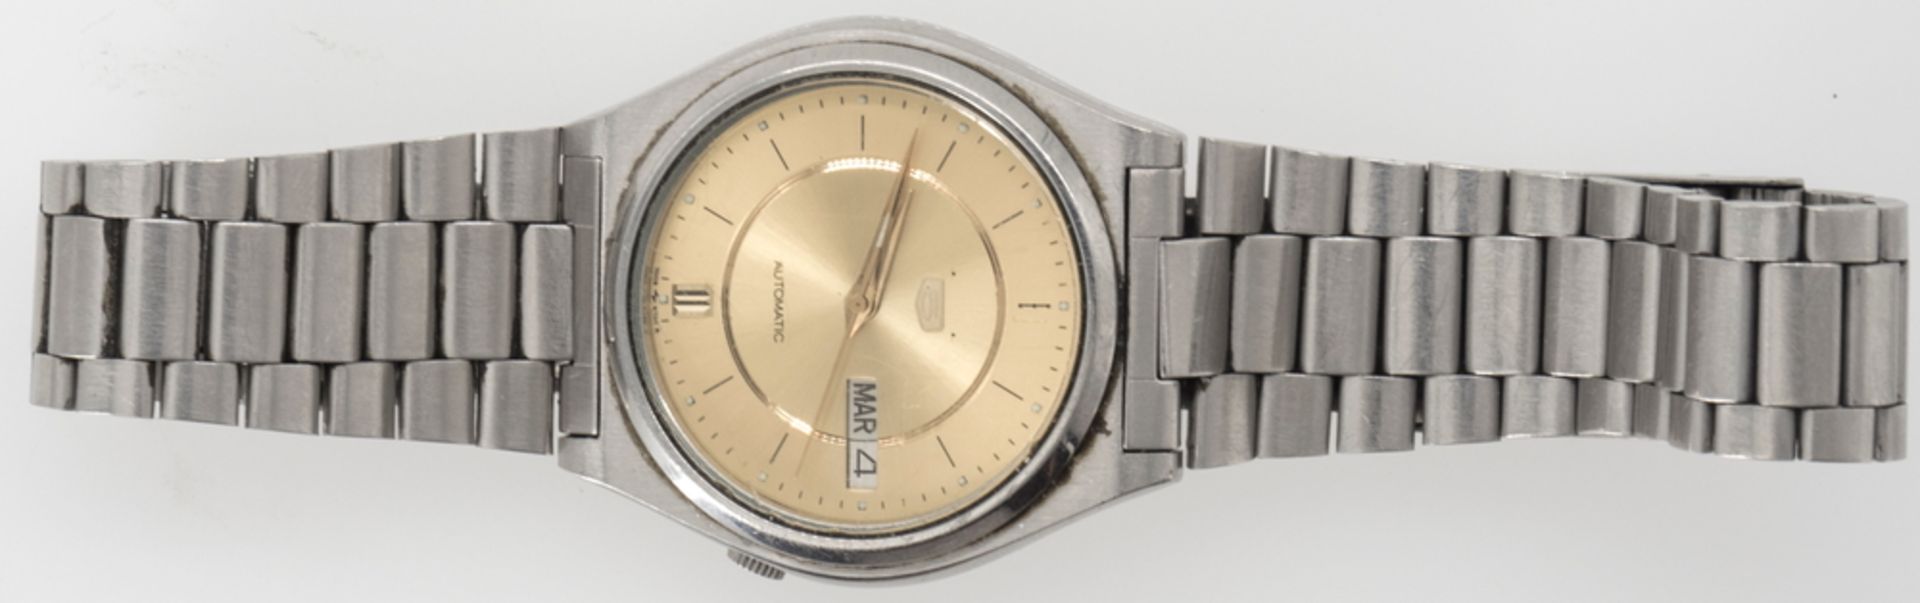 Seiko Armbanduhr, Automatic. Edelstahlarmband. Goldenes Zifferblatt. Die Uhr läuft nicht an.